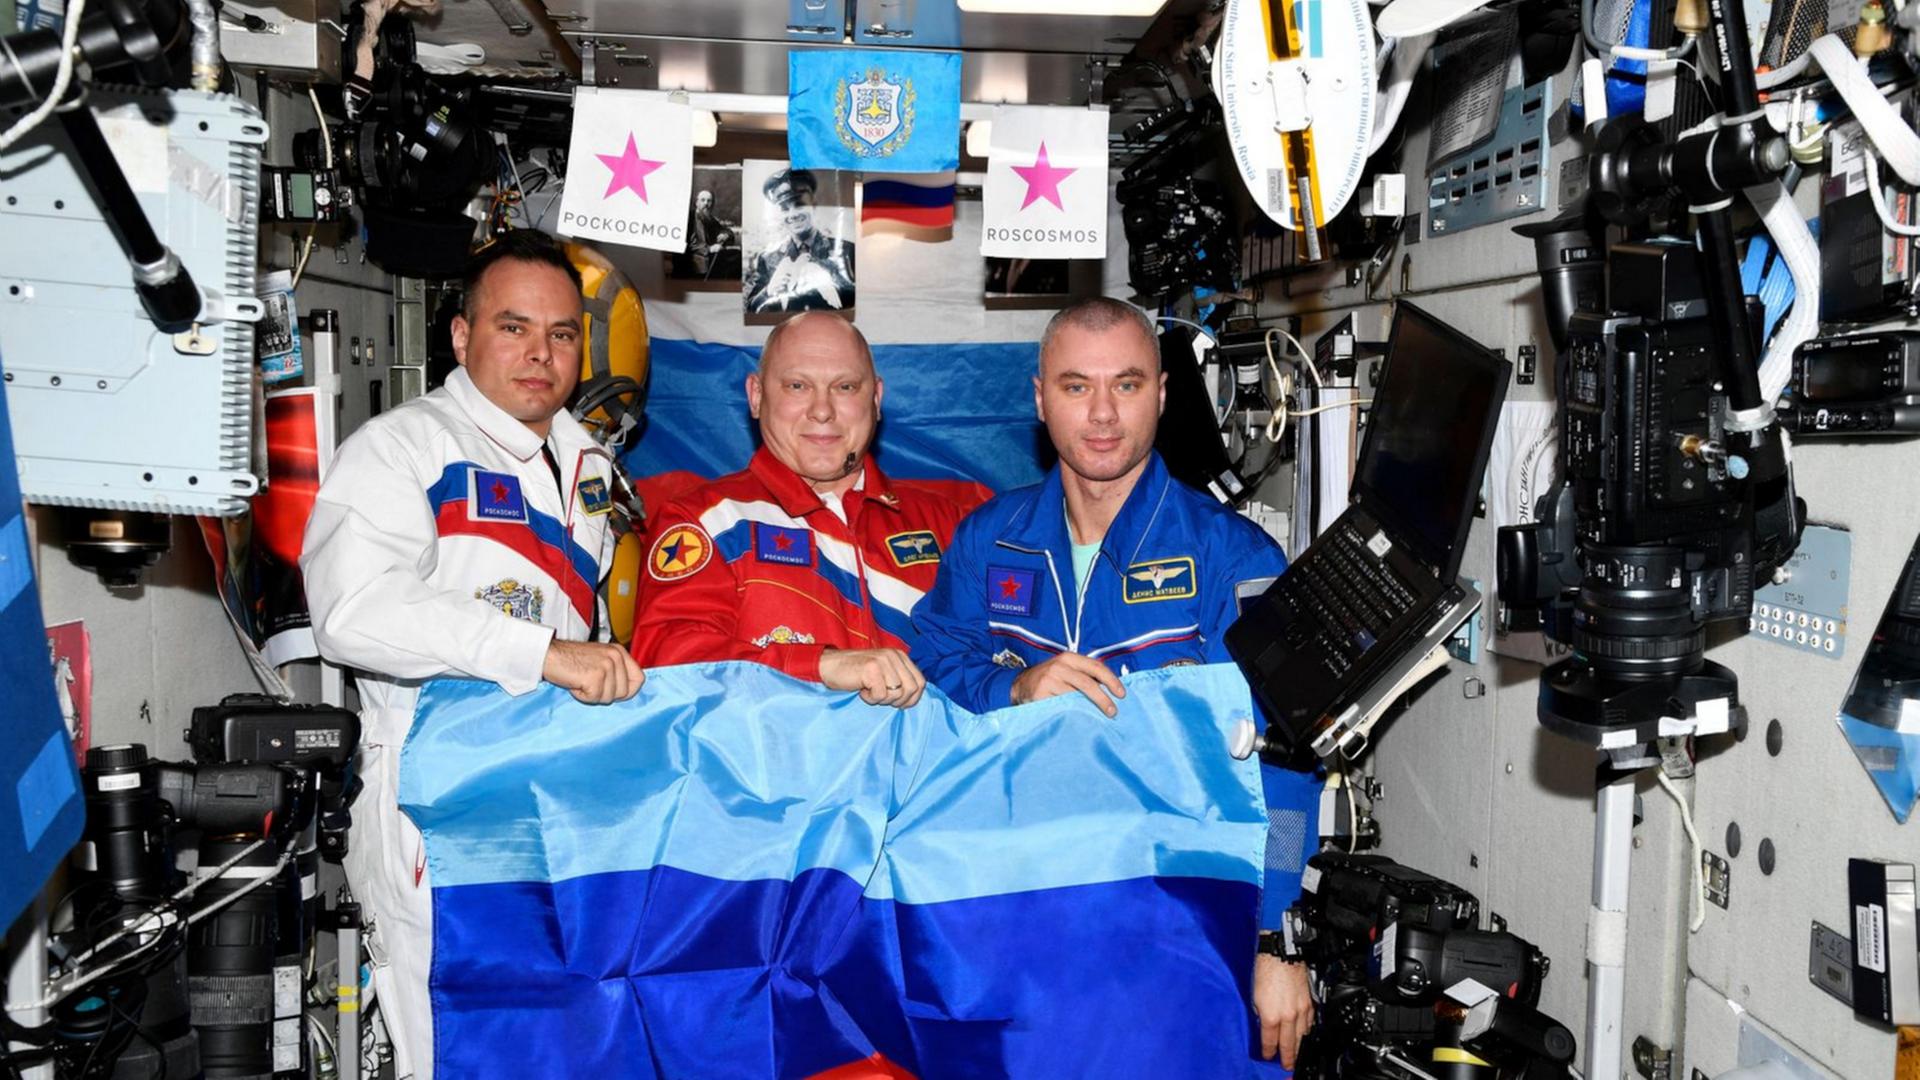 Das Ende aller ISS-Illusionen: Drei Kosmonauten – gekleidet in die russischen Nationalfarben – posieren auf der Raumstation mit der Flagge der besetzten „Volksrepublik“ Luhansk.